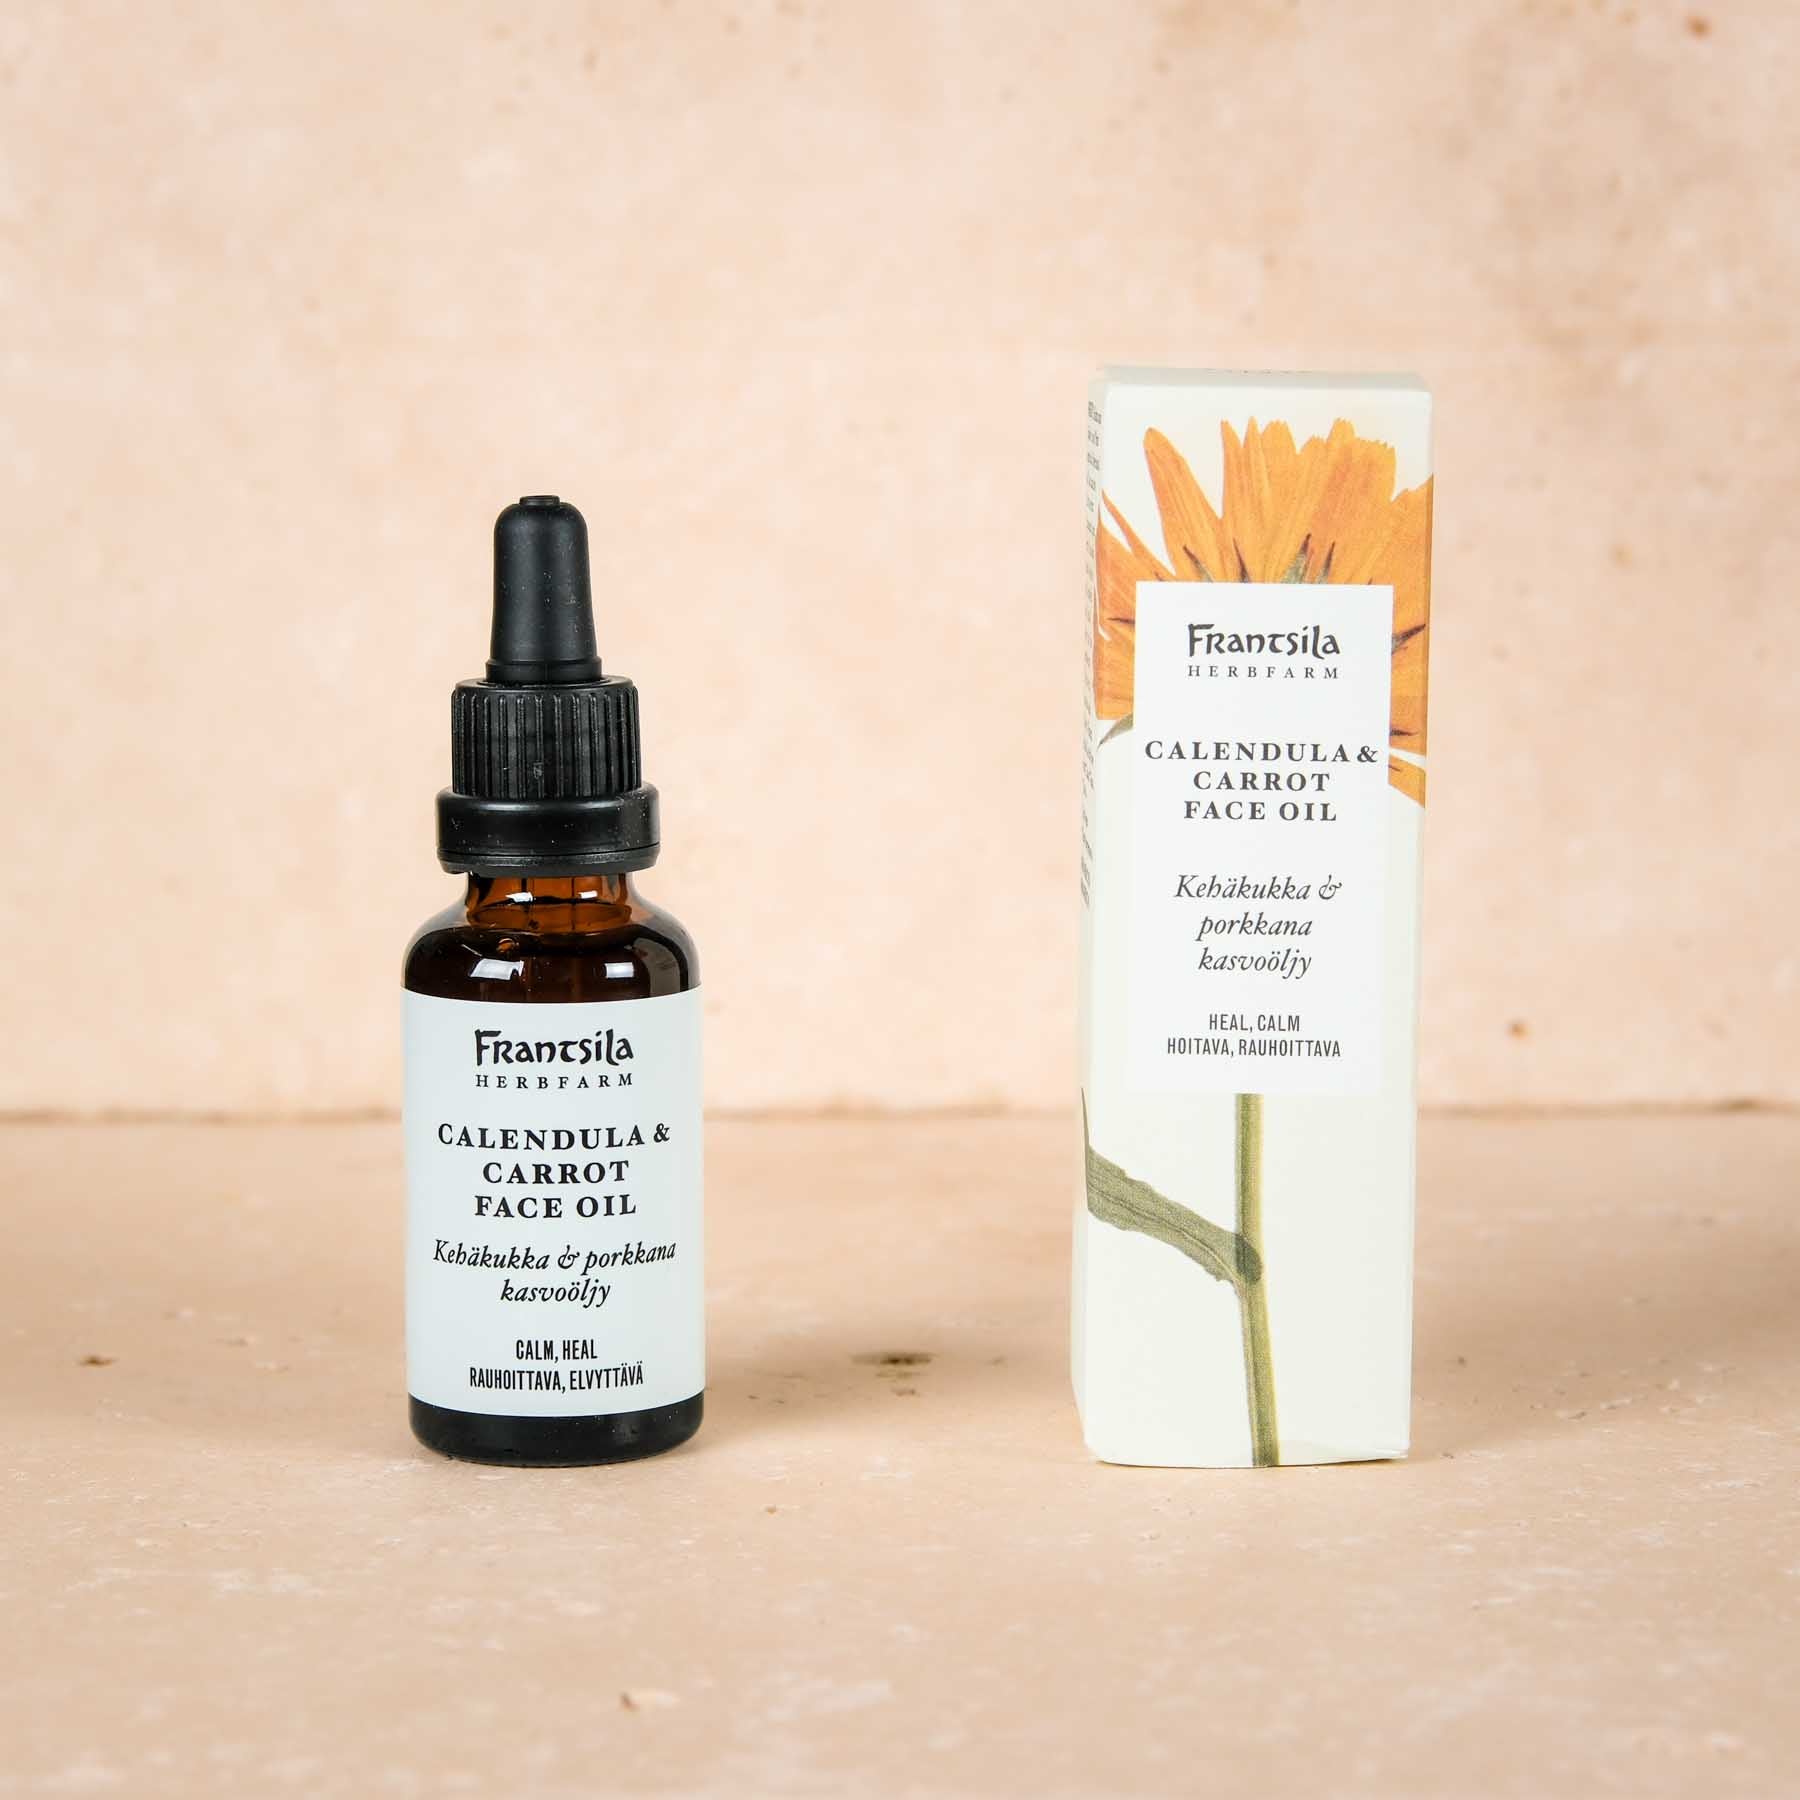 Coccolate la vostra pelle con l'olio cosmetico naturale Calendula & Carota di Frantsila - i migliori cosmetici naturali dalla Finlandia.